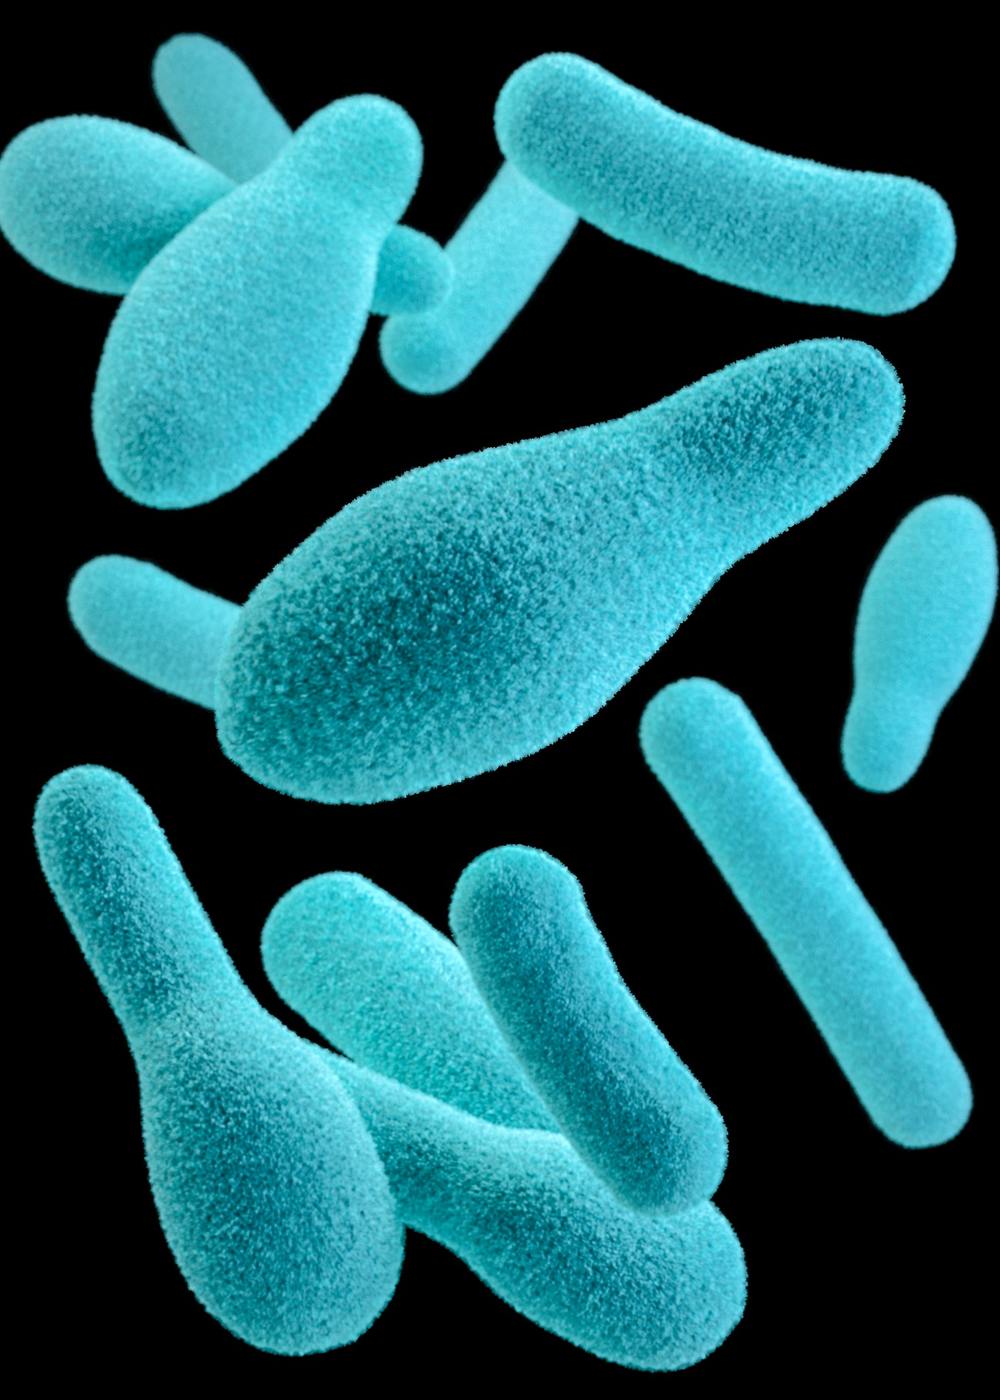  
Hình ảnh 3D của vi khuẩn Clostridium botulinum. (Ảnh: CDC).